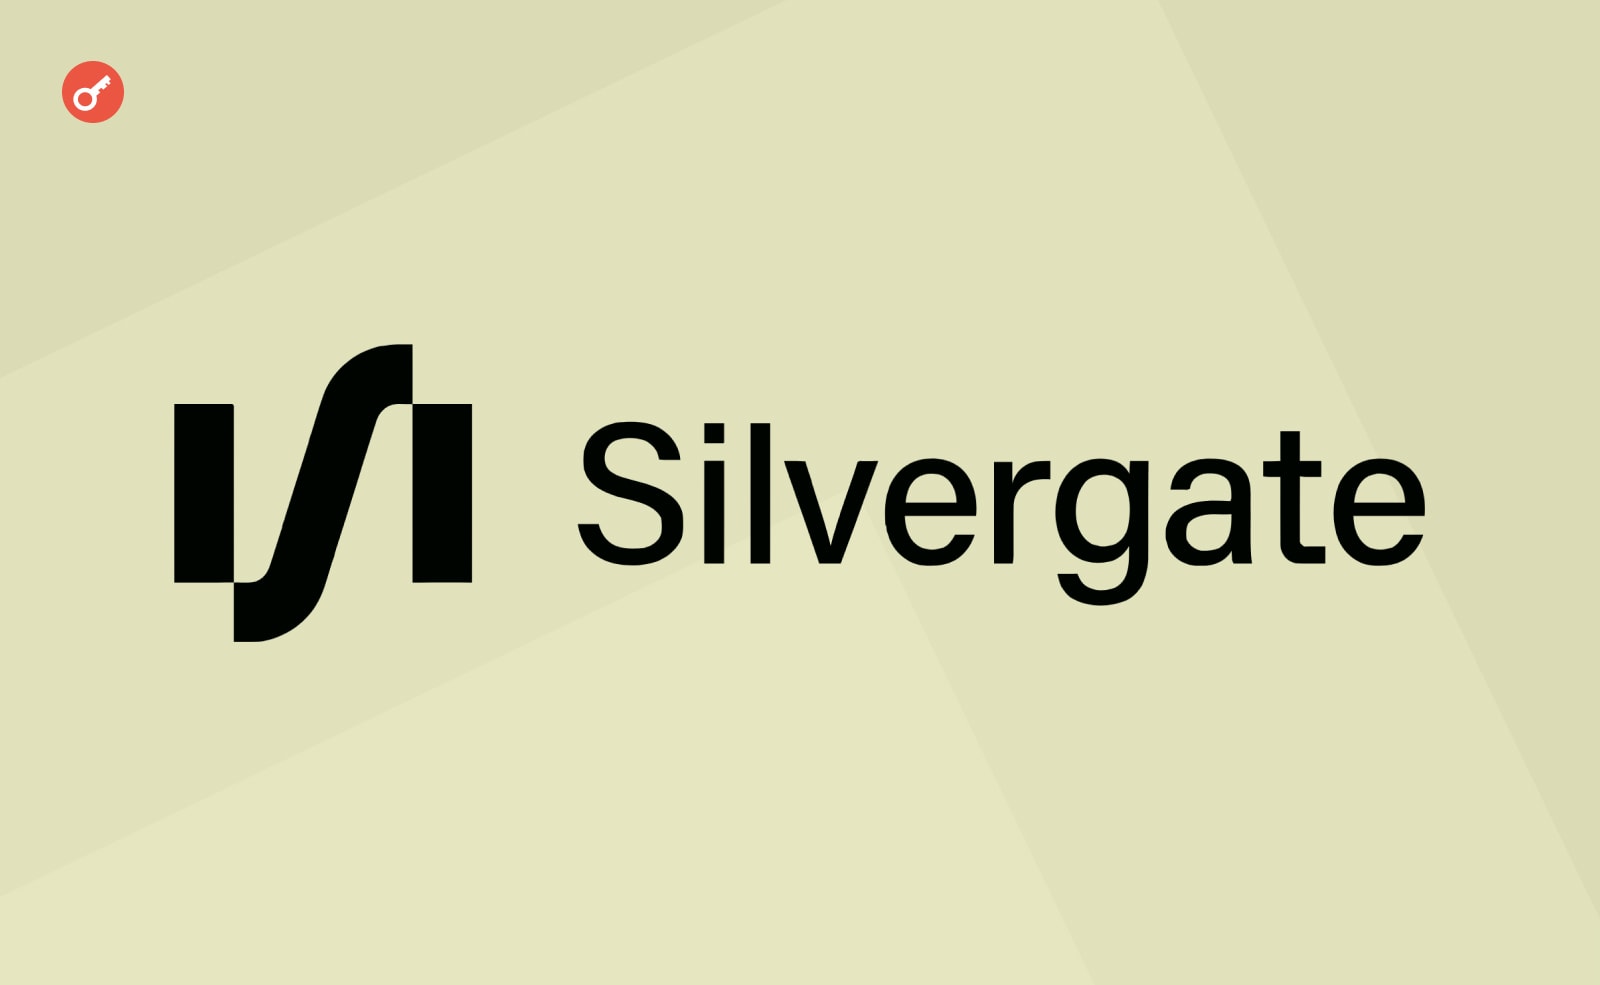 Silvergate была ответственной за обвал криптовалют – Майкл Сейлор. Заглавный коллаж новости.